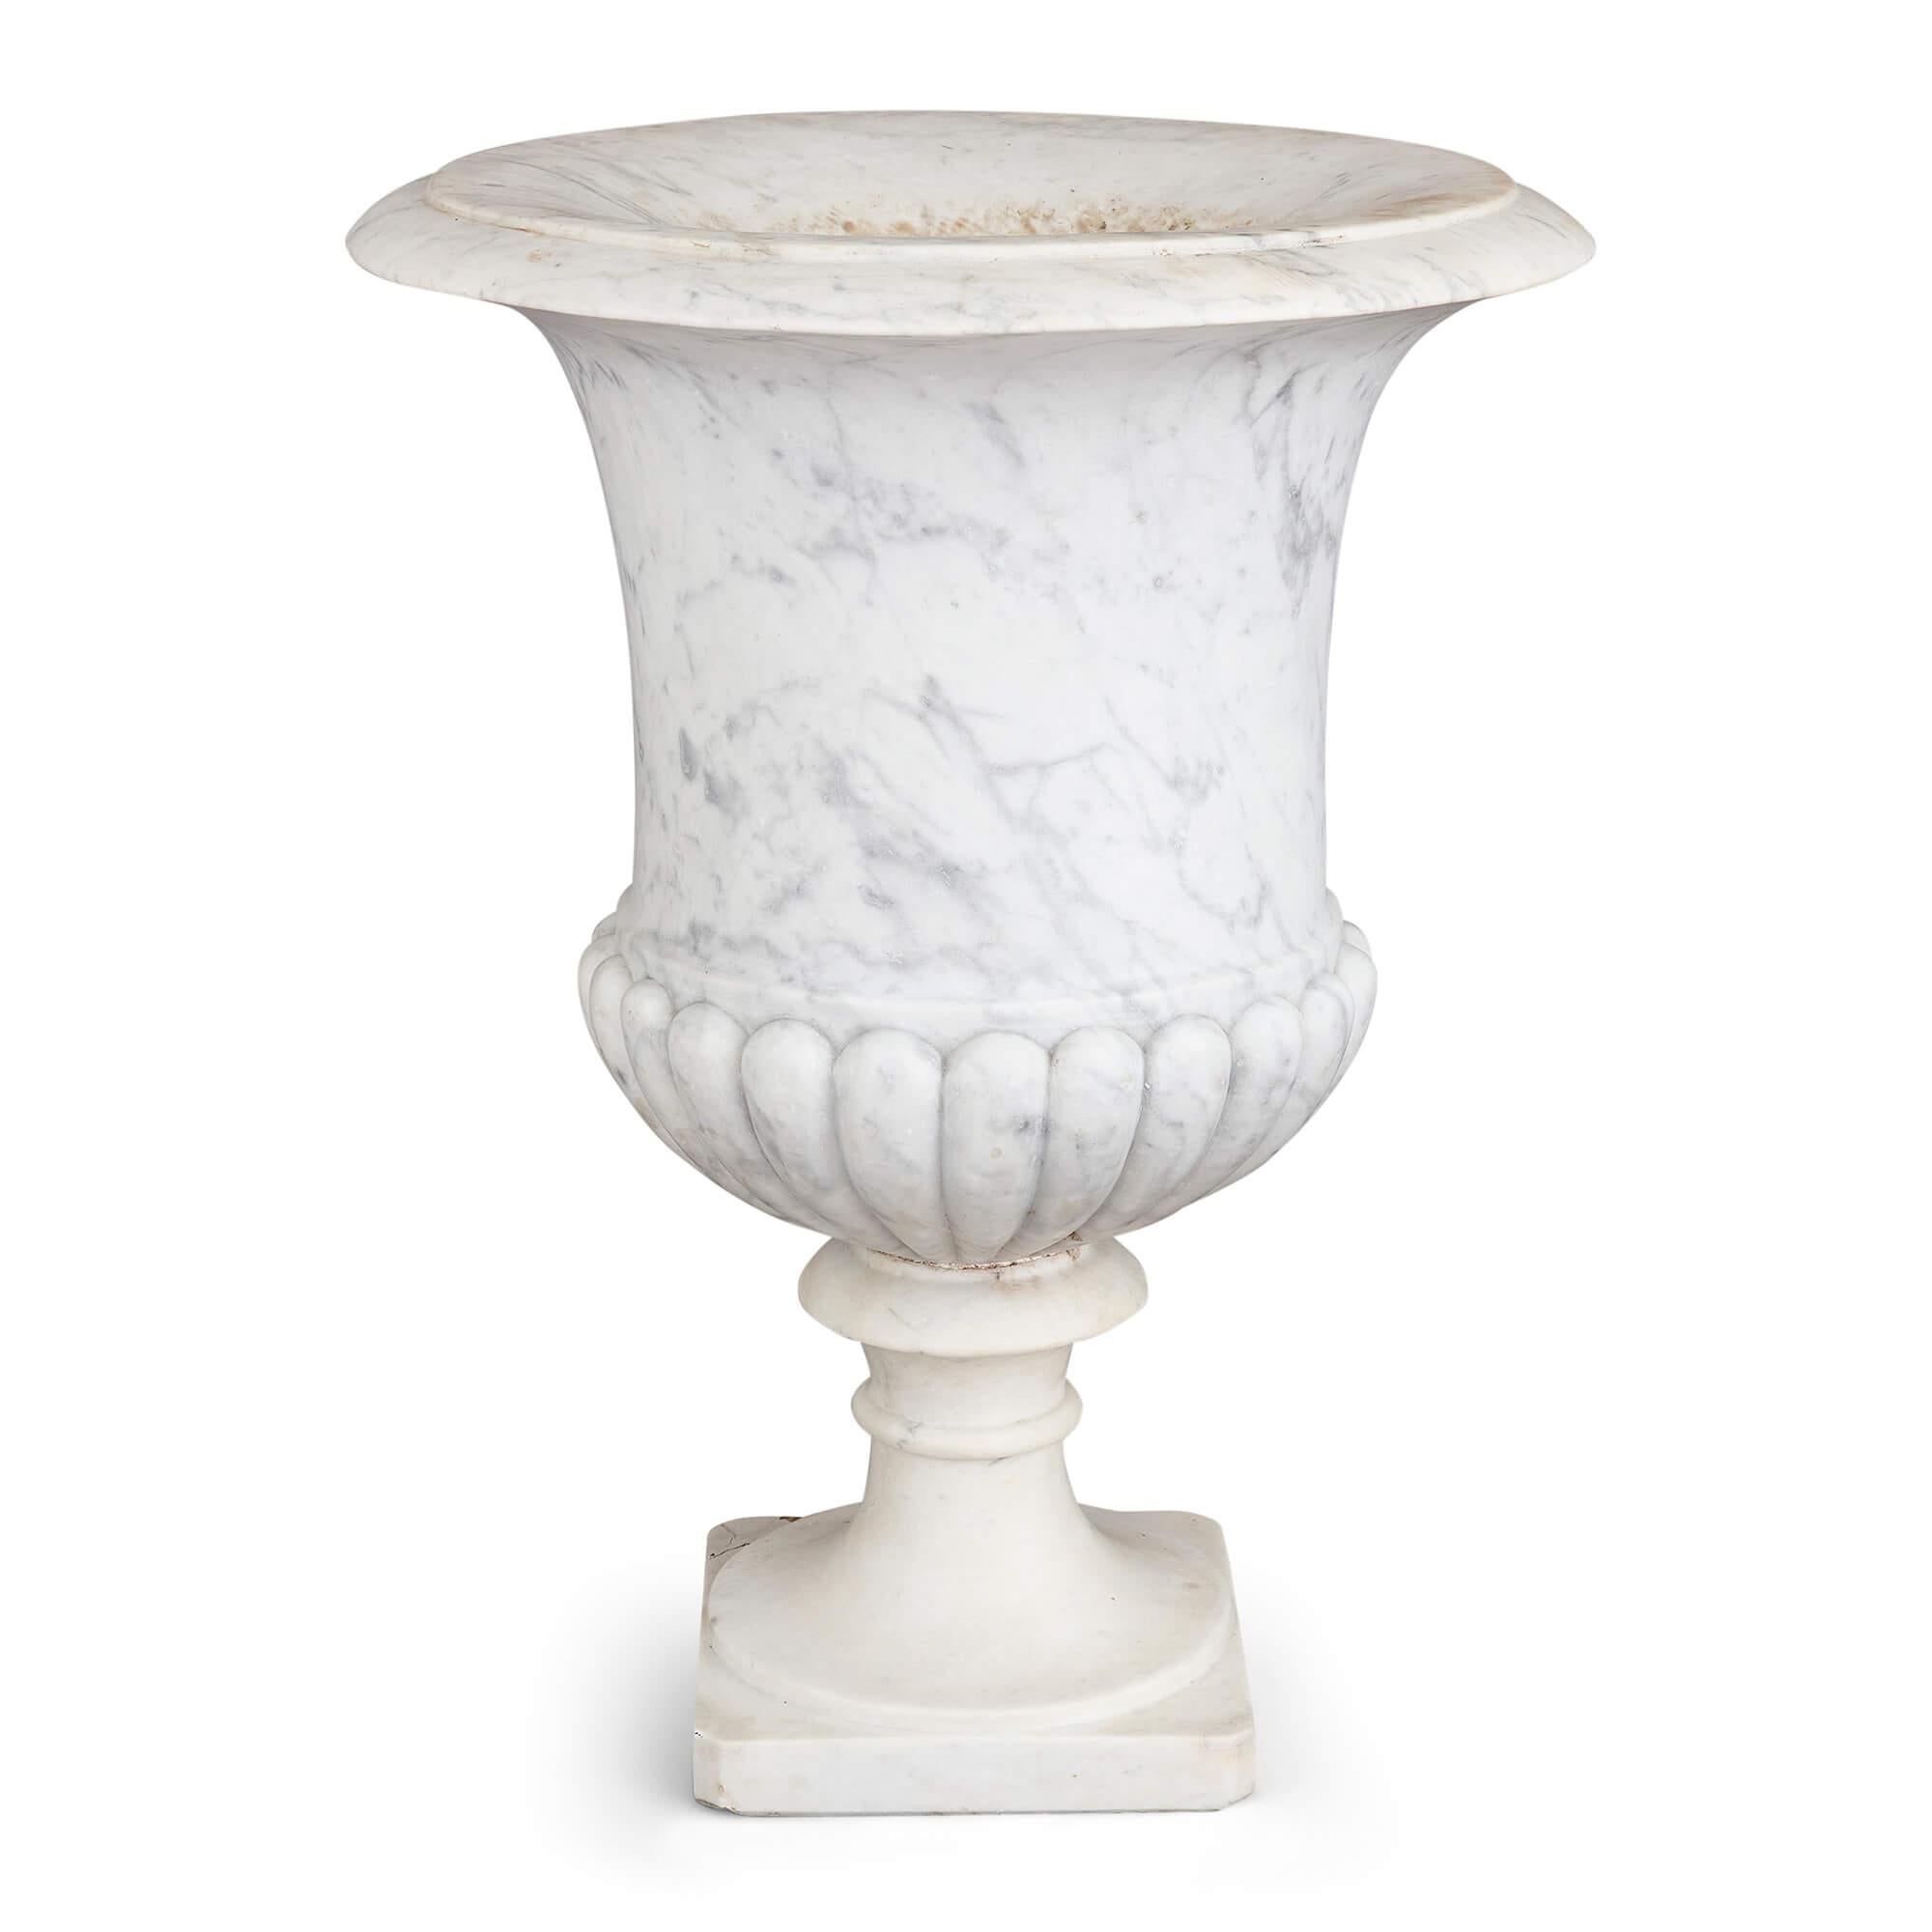 Große antike geschnitzte weiße Marmor Medici Vase Garten Urne 
Kontinental, 20. Jahrhundert
Höhe 73cm, Durchmesser 55cm

Diese strahlend weiße Gartenurne aus Marmor wurde im 20. Jahrhundert gefertigt und strahlt eine Aura zeitloser Eleganz aus.